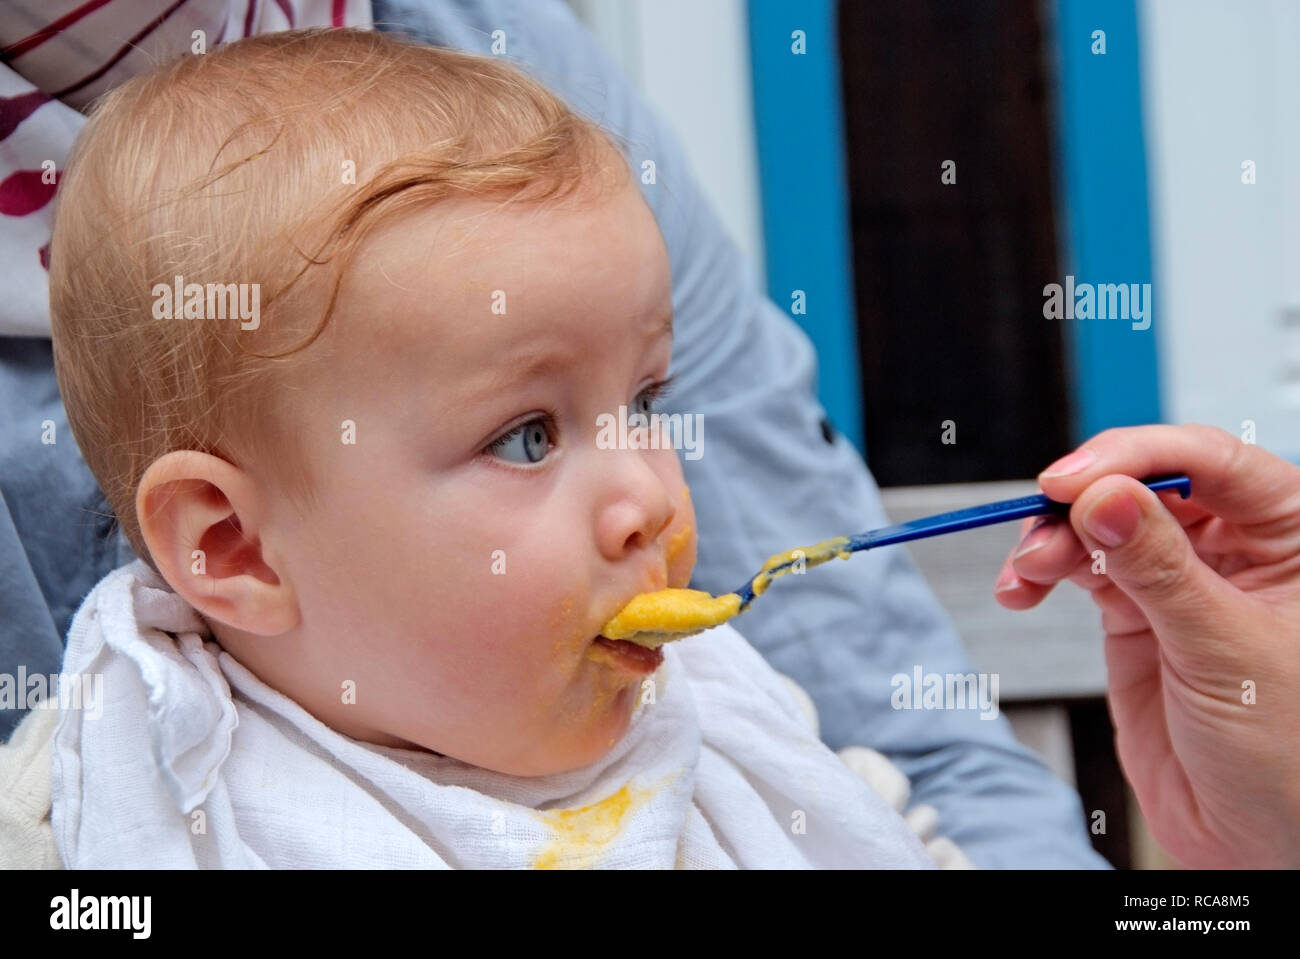 Eltern füttern ihr Baby mit Brei | parents feeding their baby wit pap Stock Photo